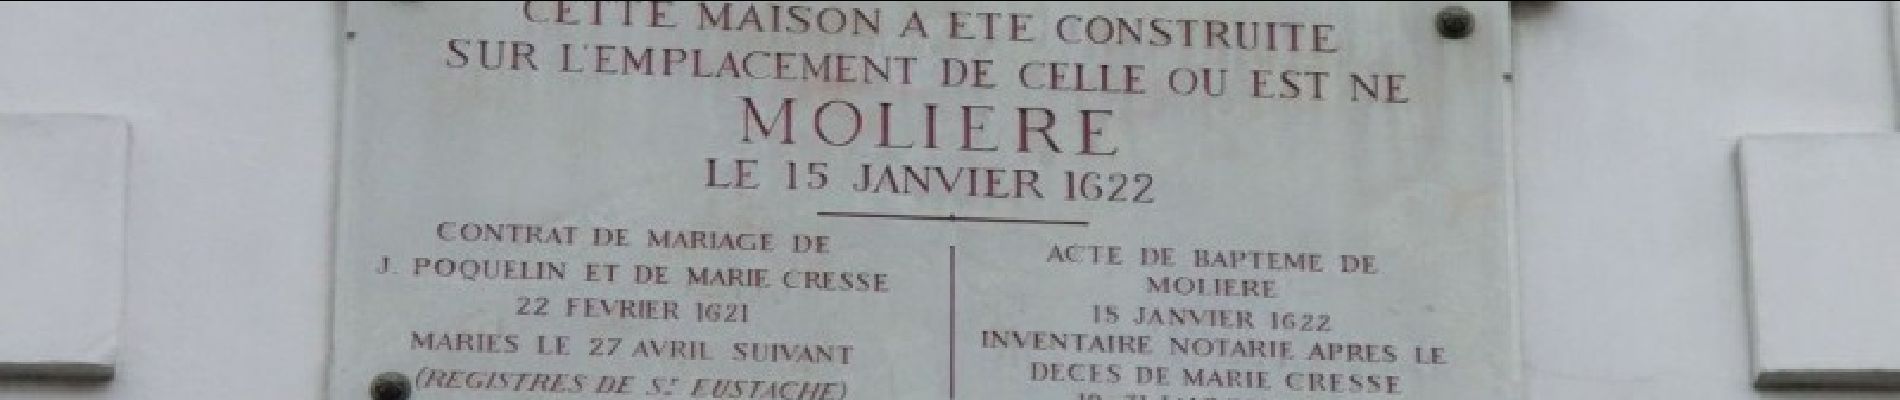 POI Paris - Vrai lieu de la naissance de Molière - Photo